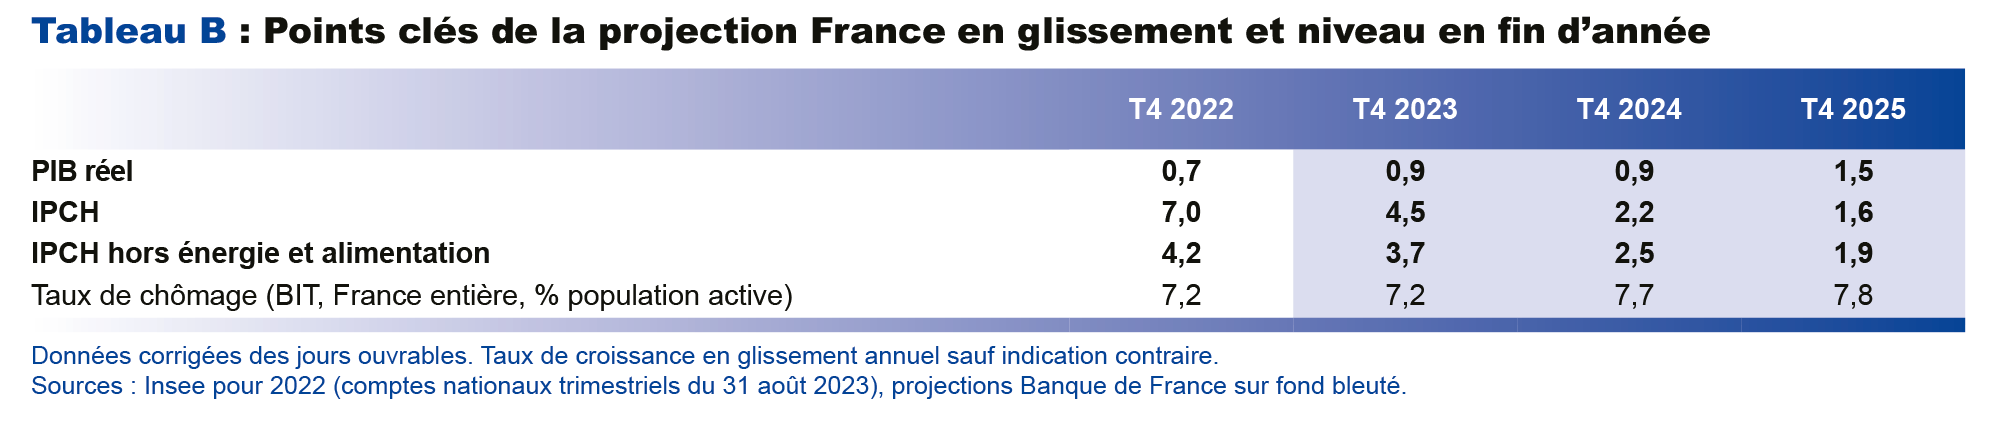  Projections macroéconomique septembre 2023 -  Points clés de la projection France en fin d’année 